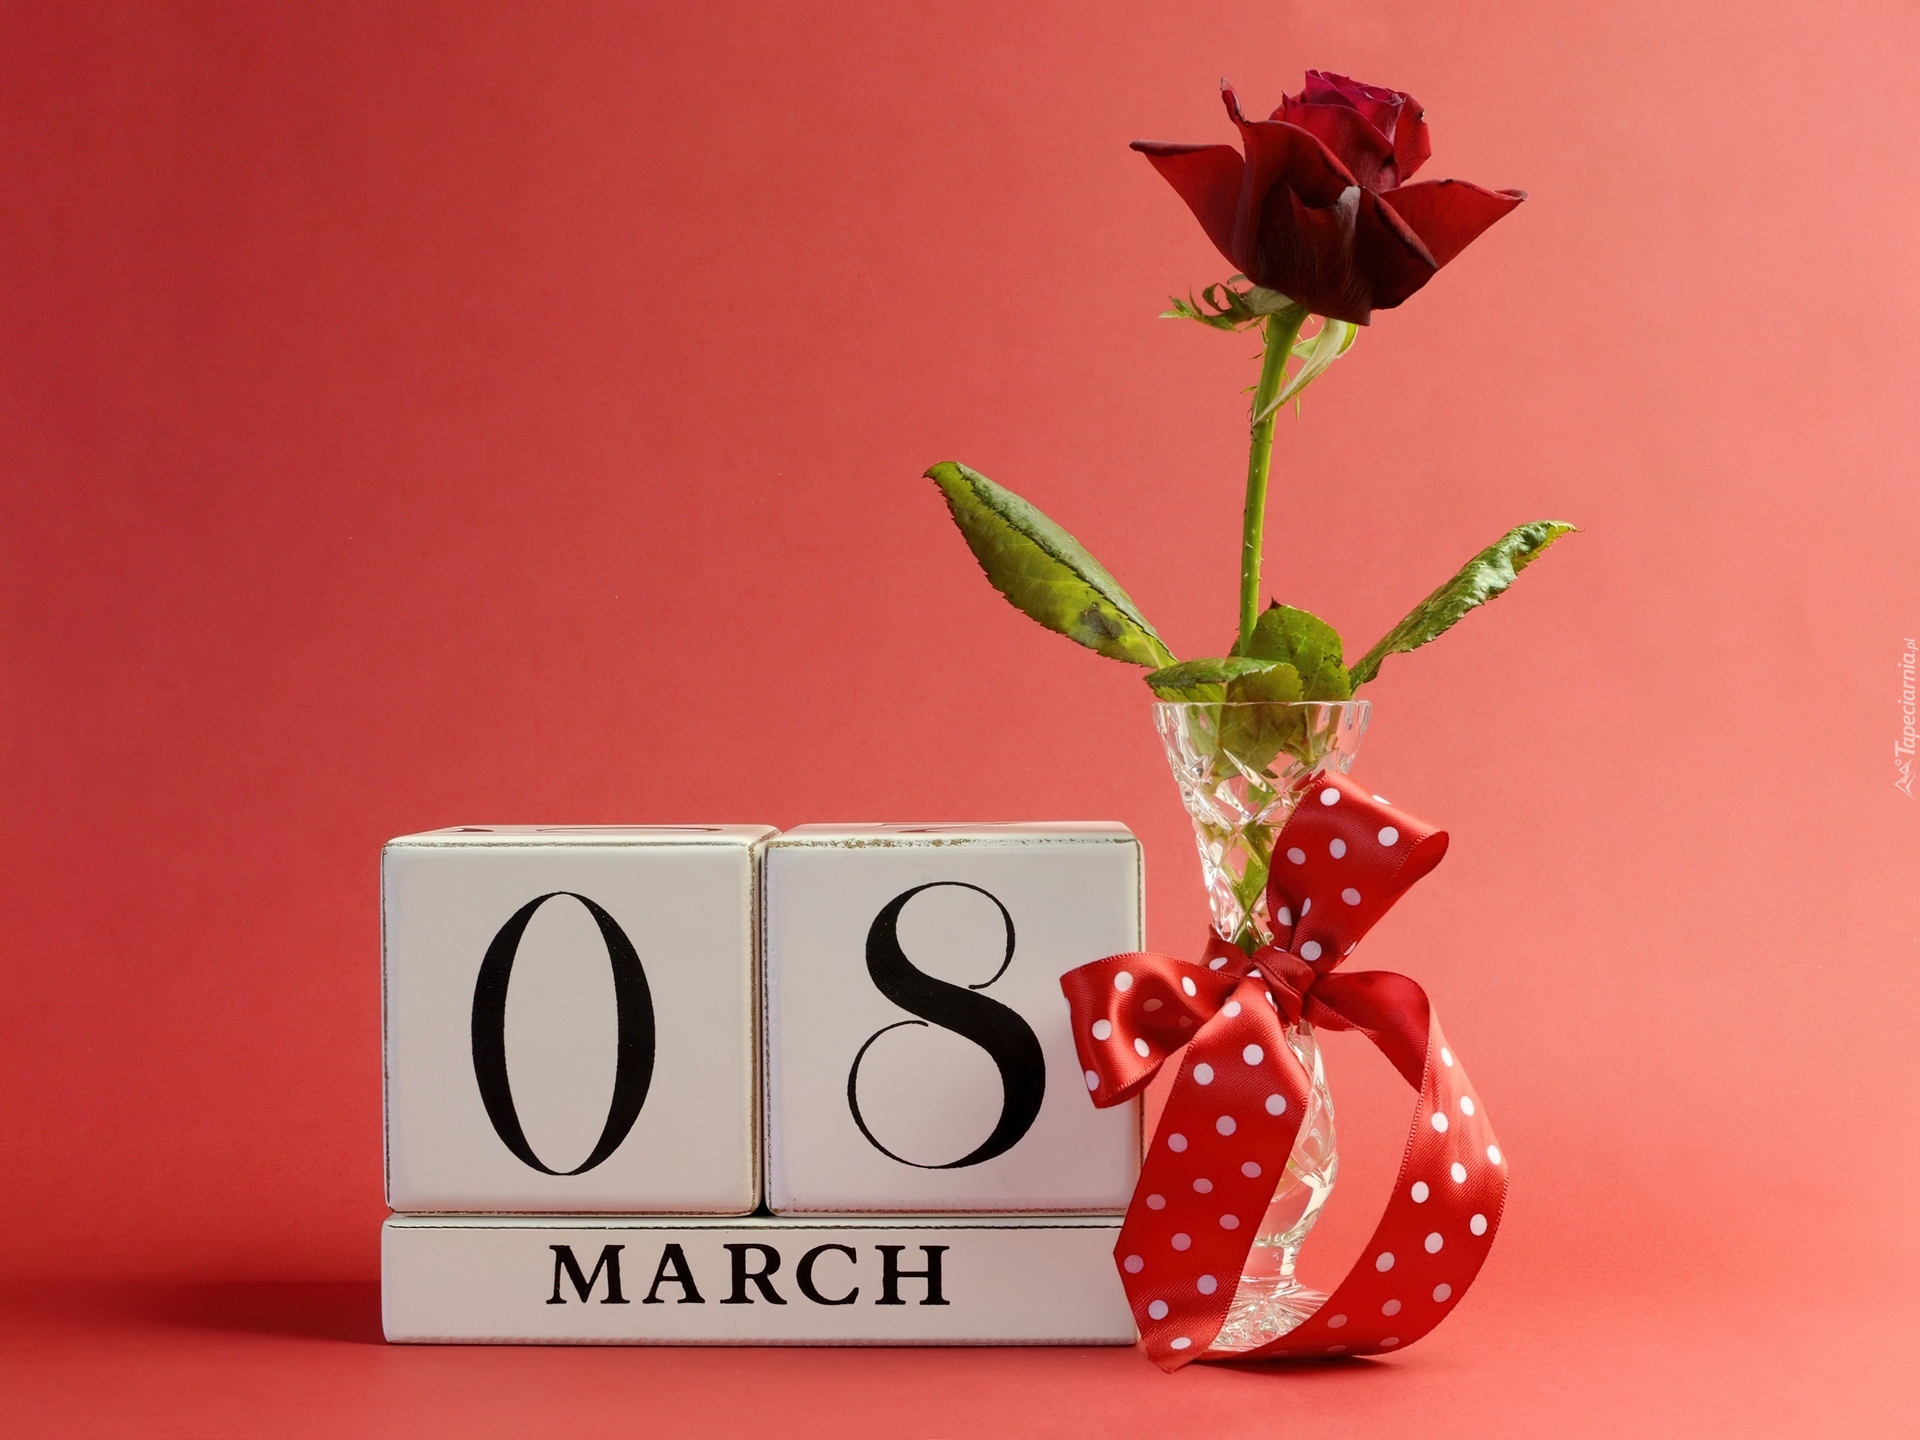 8 Marca, Dzień, Kobiet, Róża